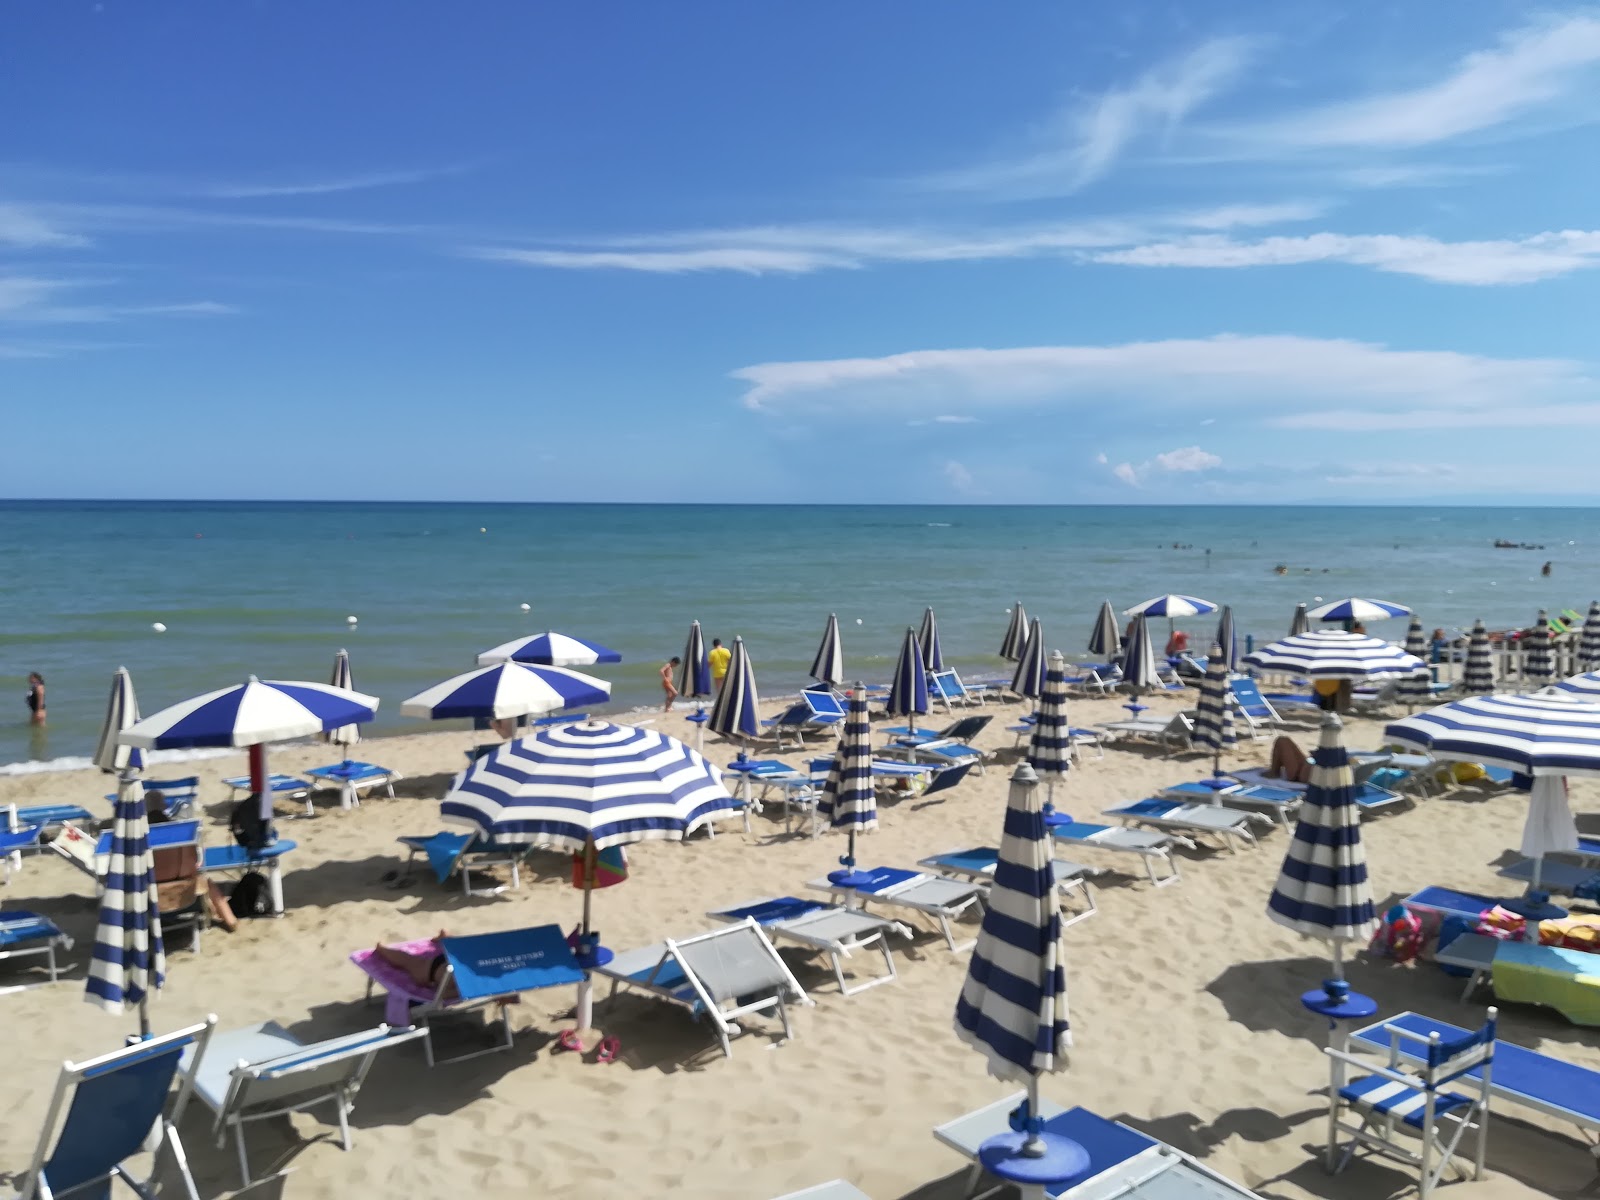 Zdjęcie Metaponto Lido beach - popularne miejsce wśród znawców relaksu